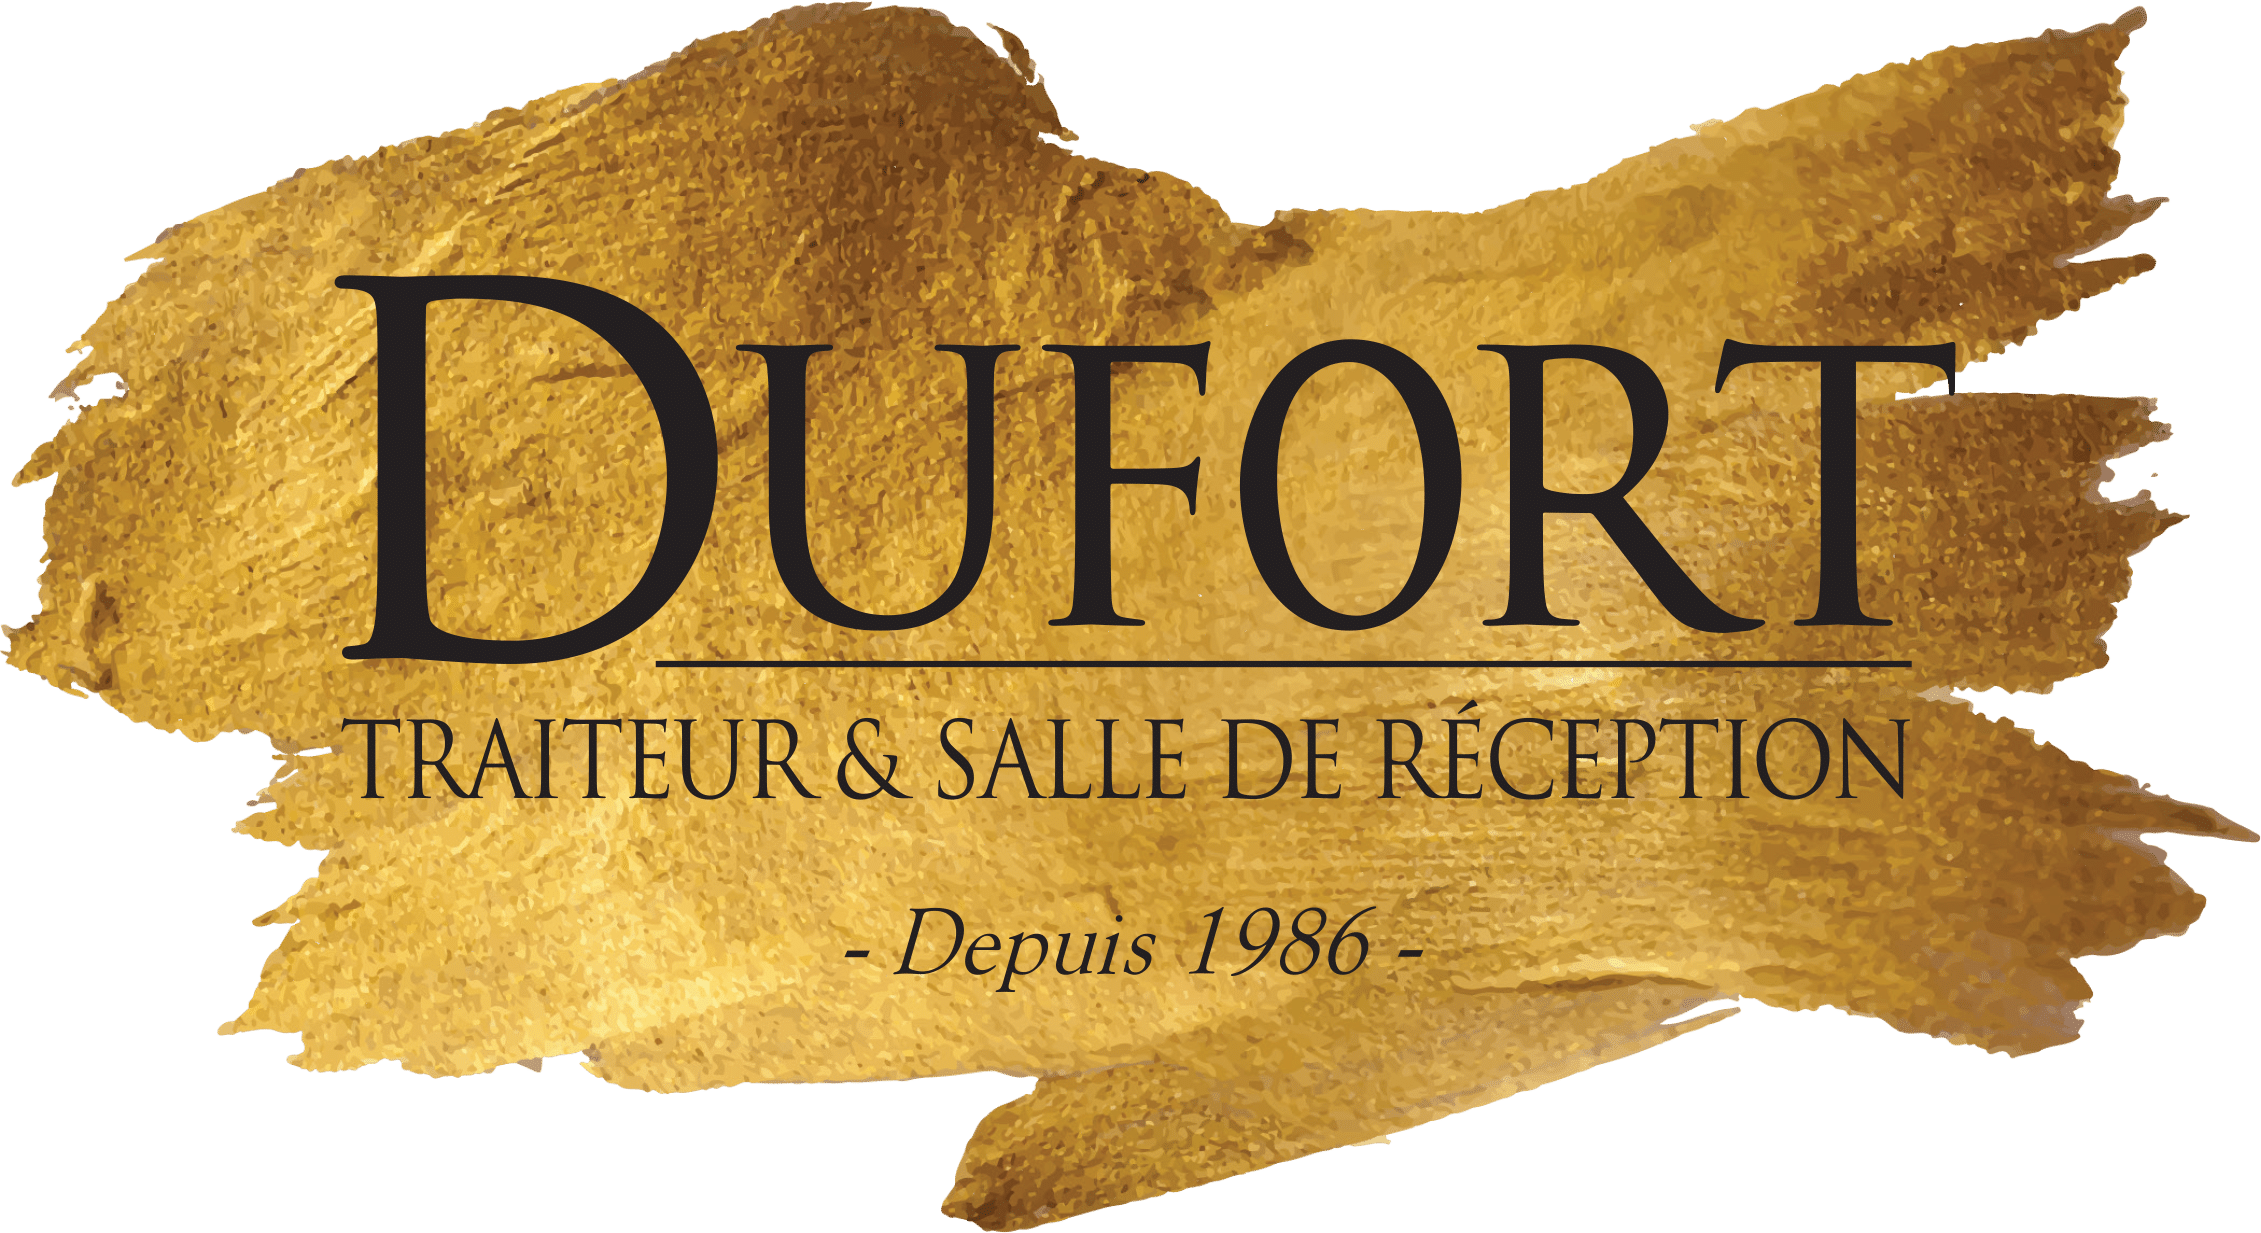 DuFort Traiteur Logo